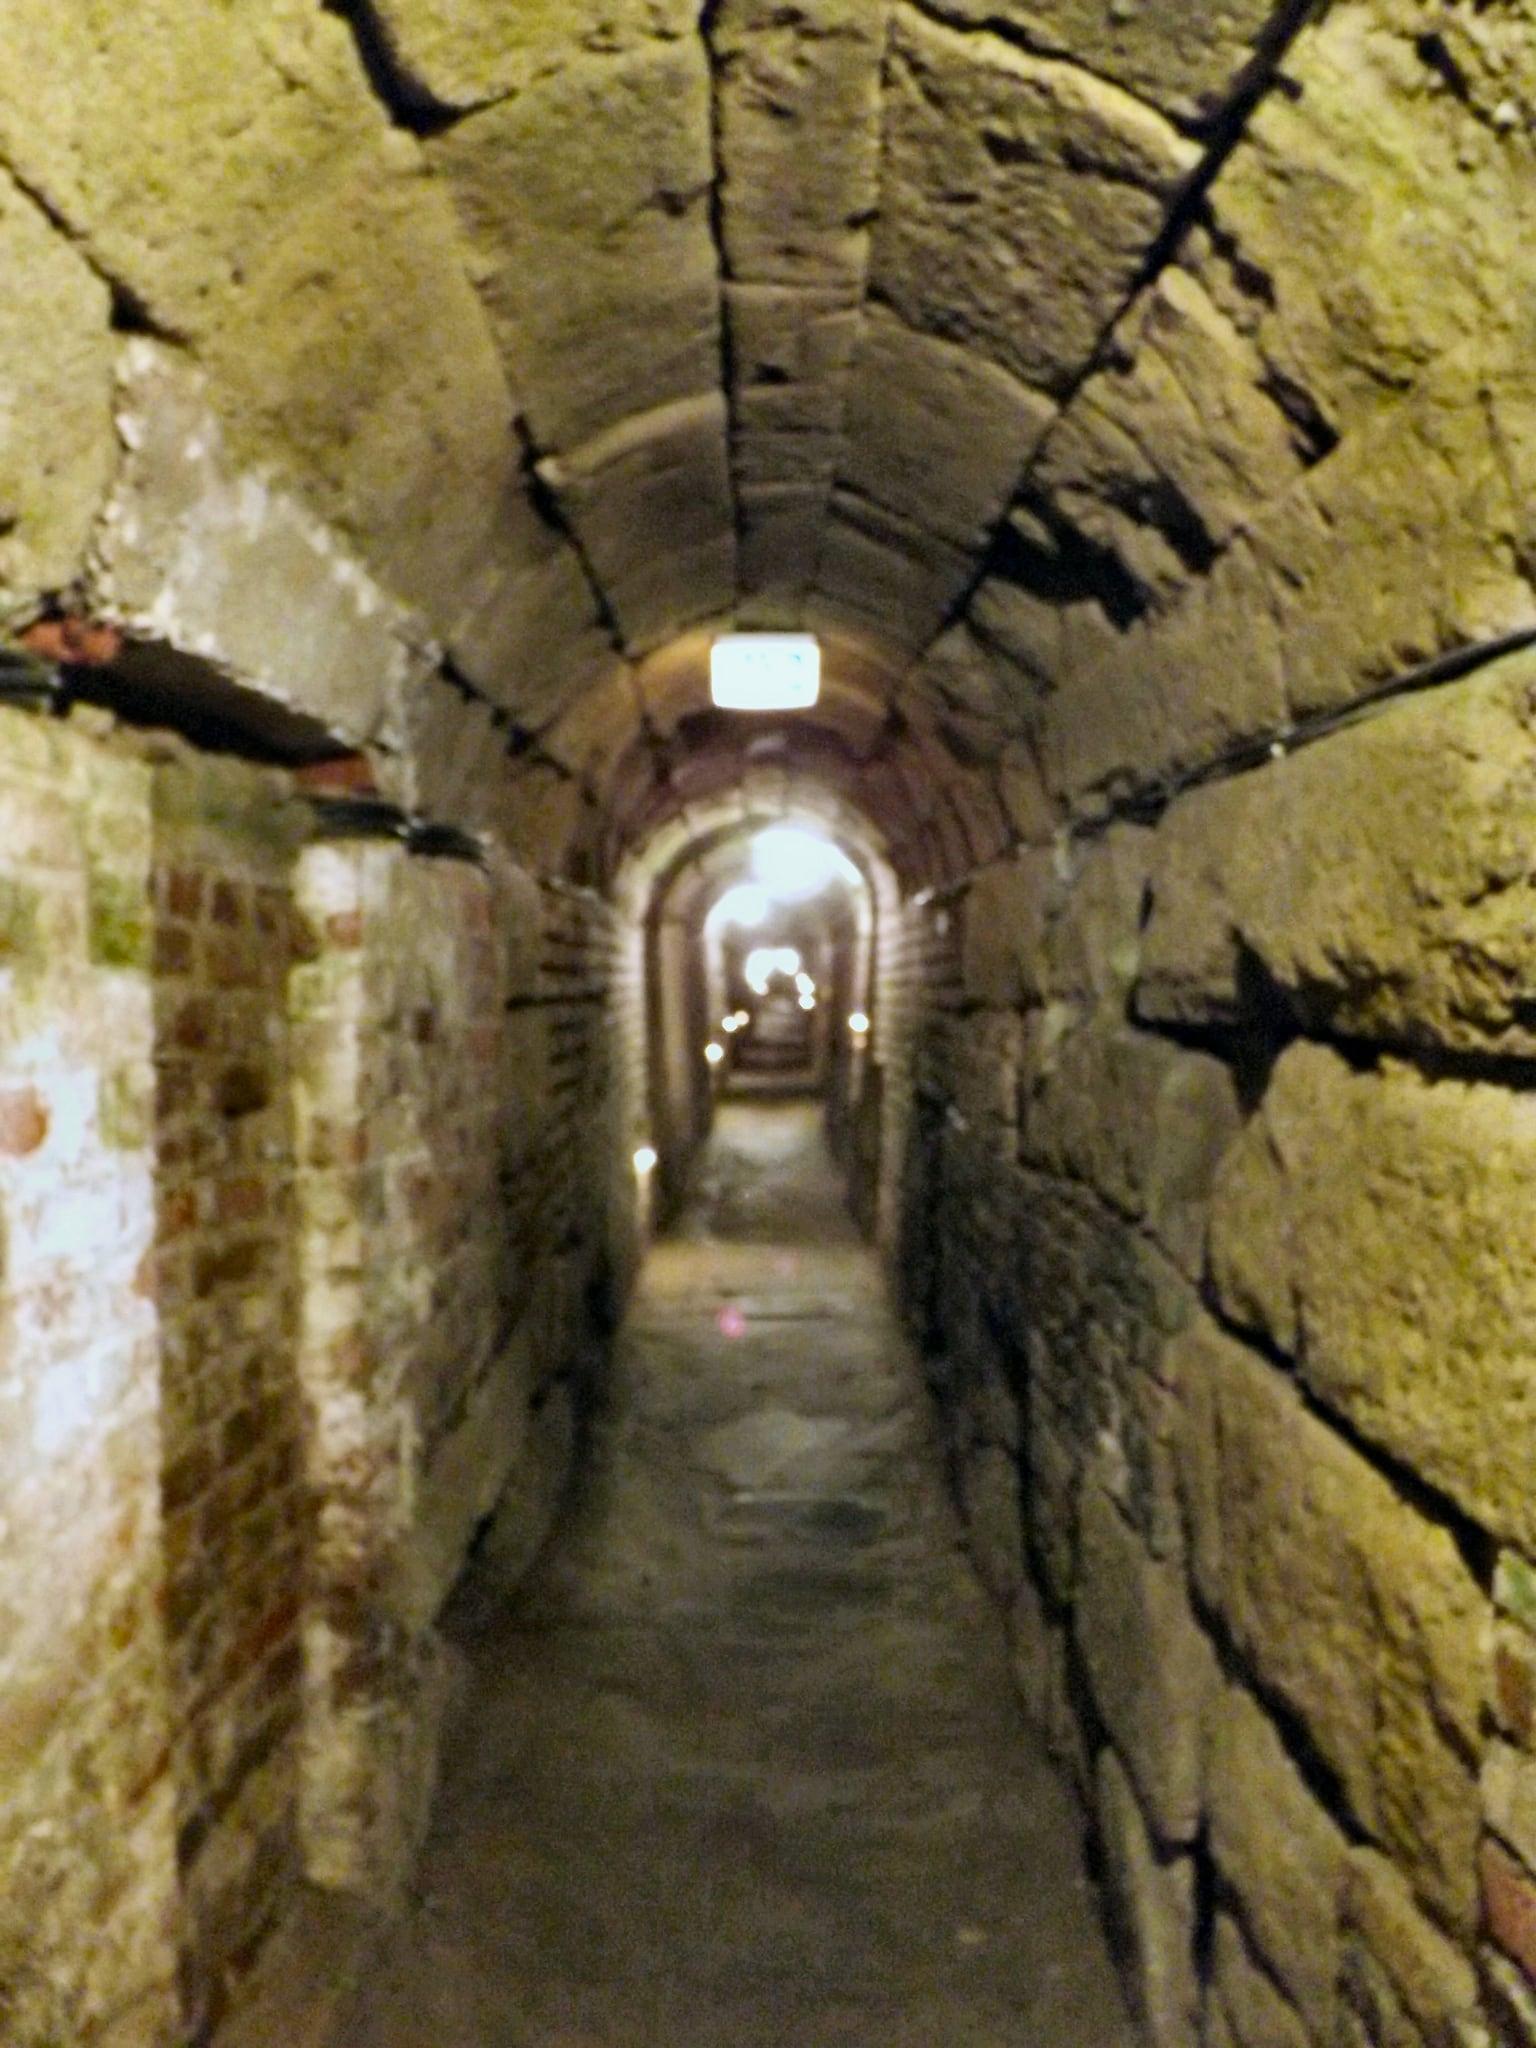 Immagine di Praetorium. museum cologne sewer cloaca praetorium romansewer coloniaclaudiaaraaggripinensium